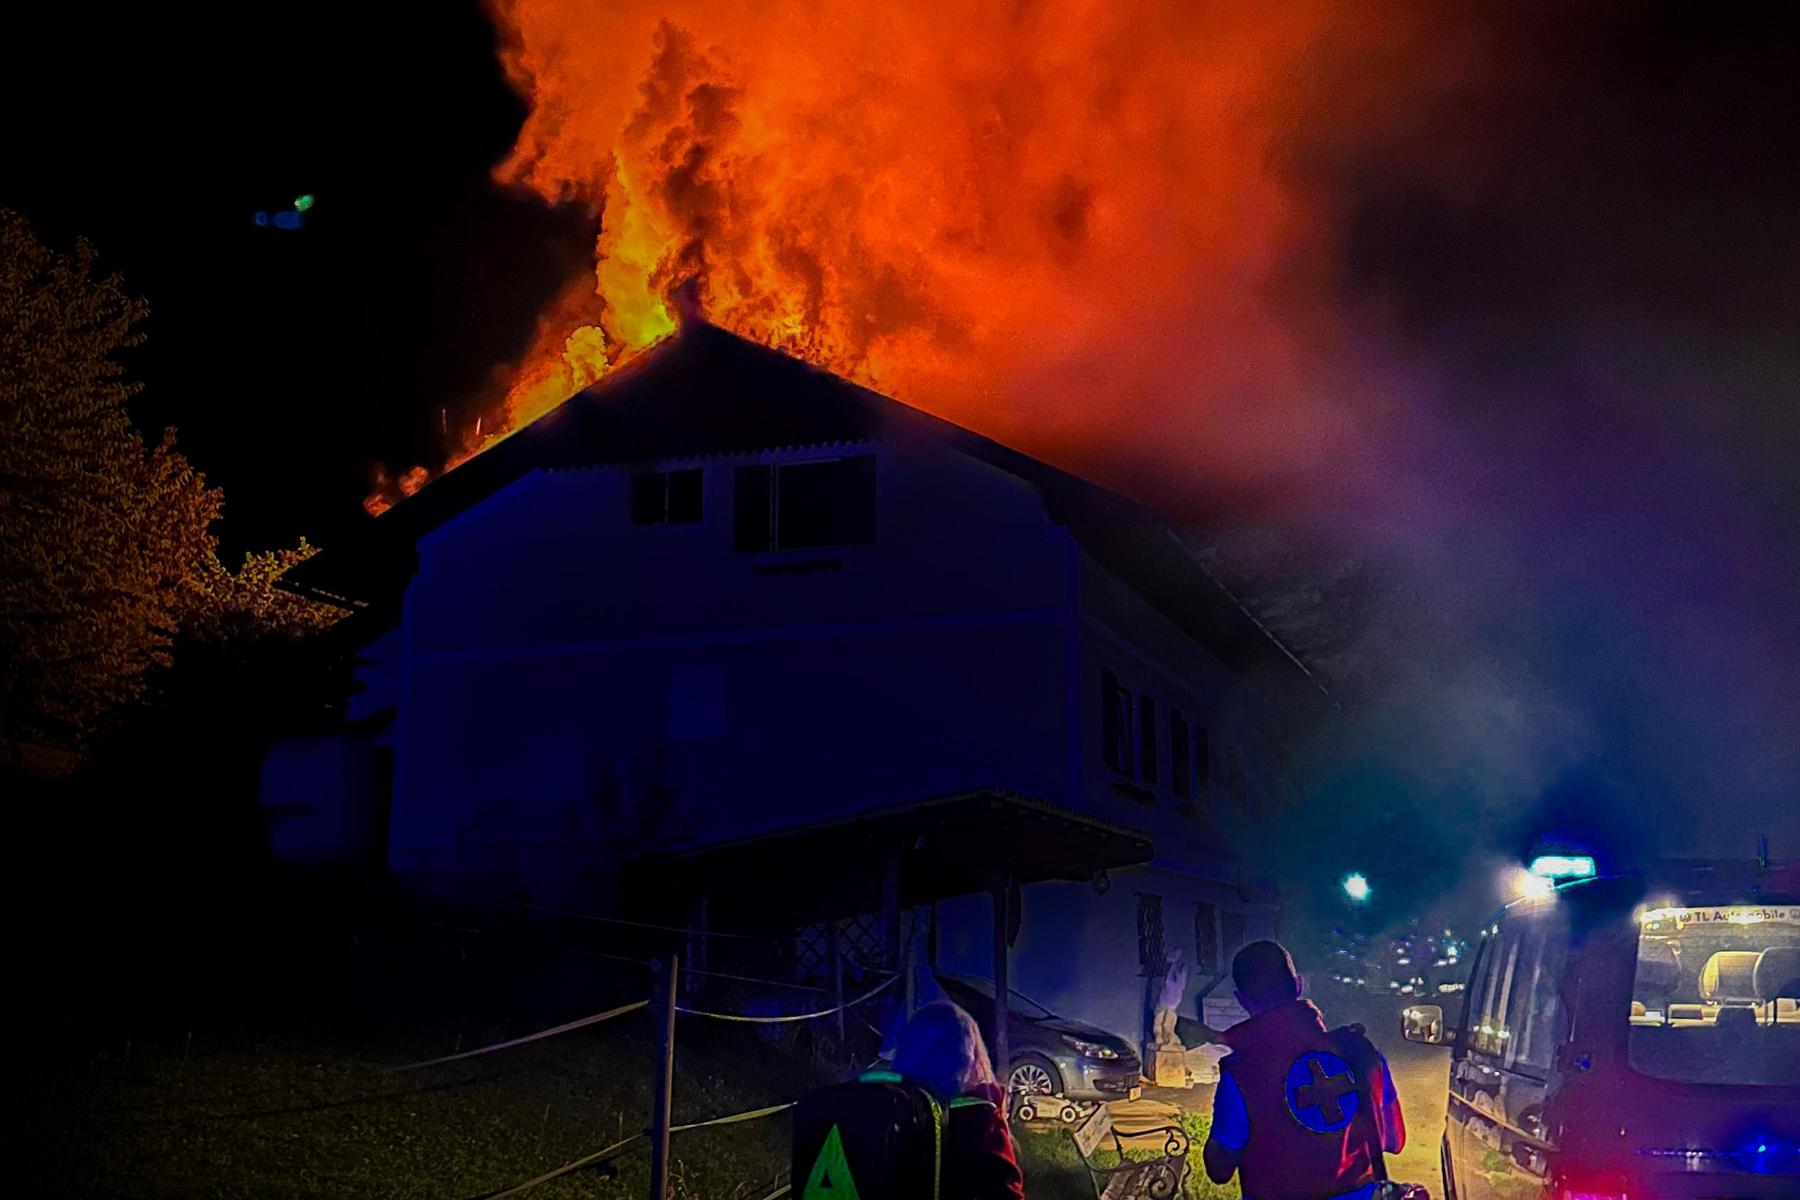 Wohnhaus begann zu brennen, Frau und Kinder konnten flüchten